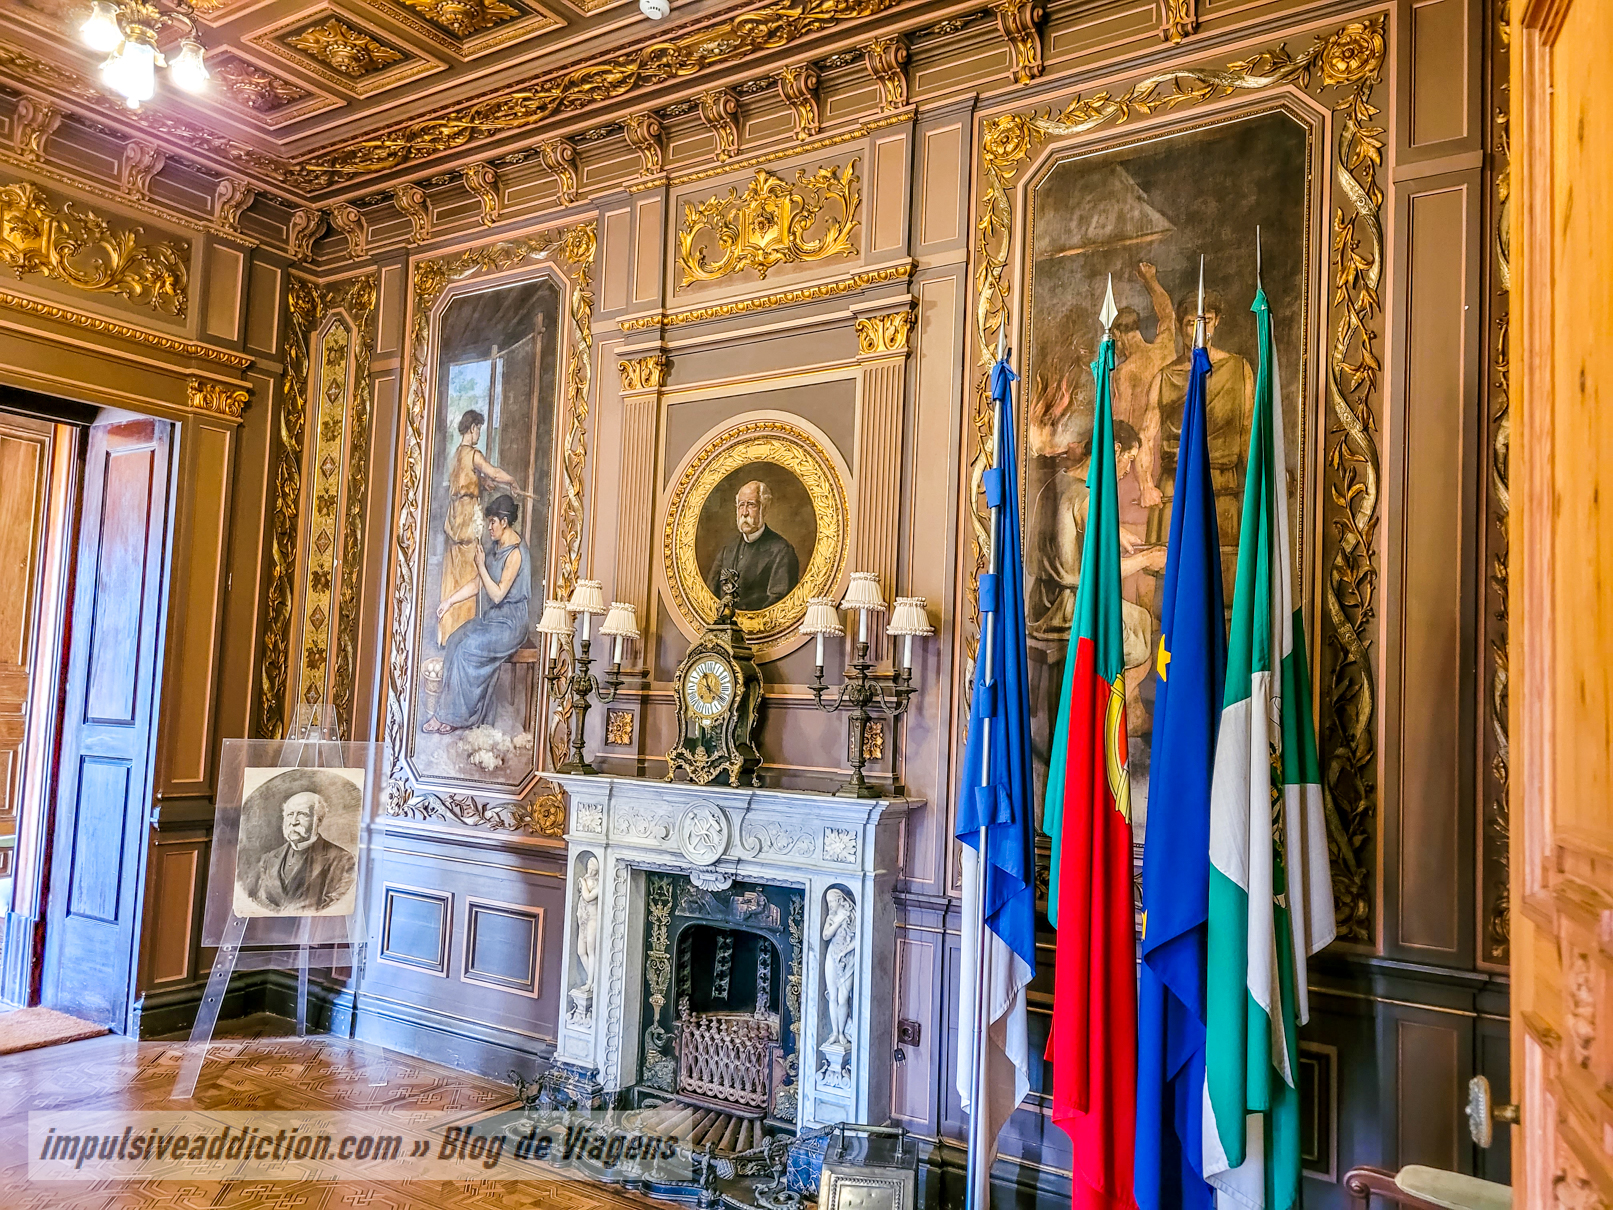 Salas do Palácio da Bolsa do Porto